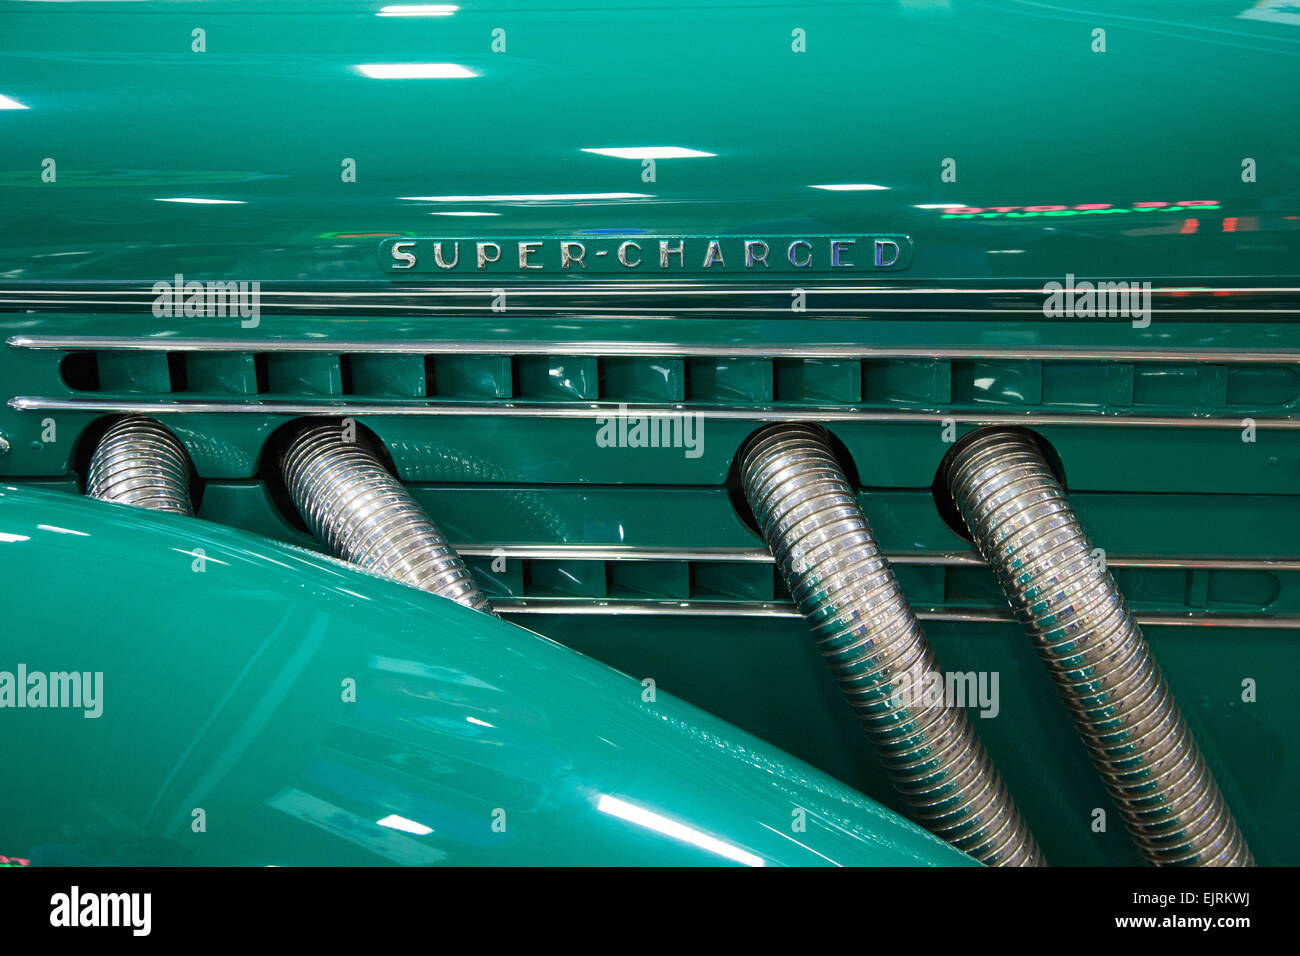 Chesterfield Twp., Michigan - ein 1936 Auburn Modell 852 Speedster auf dem Display an Stahl Automotive-Stiftung. Stockfoto